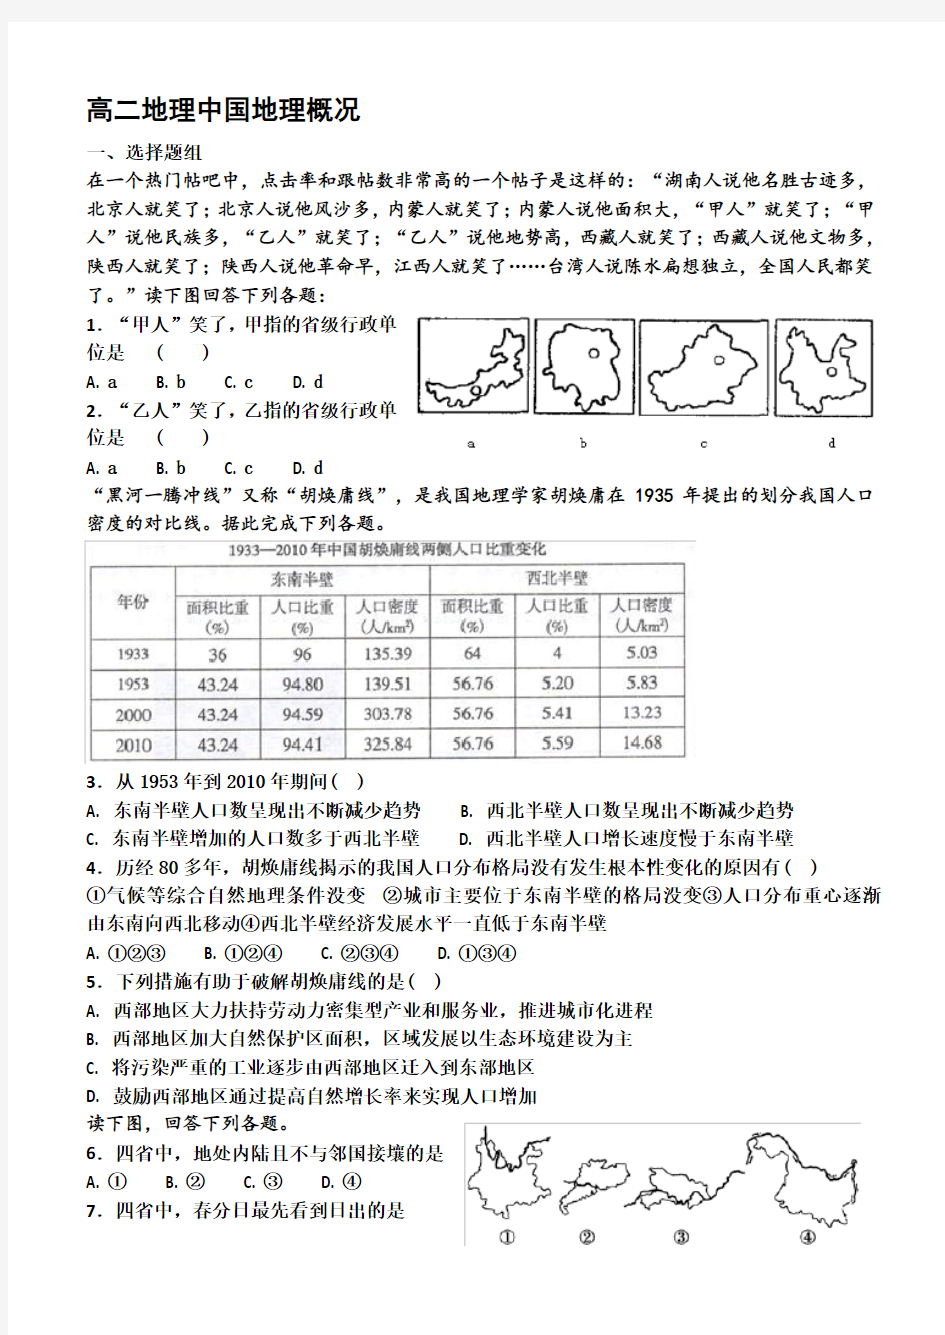 高二区域地理中国地理概况测试题.